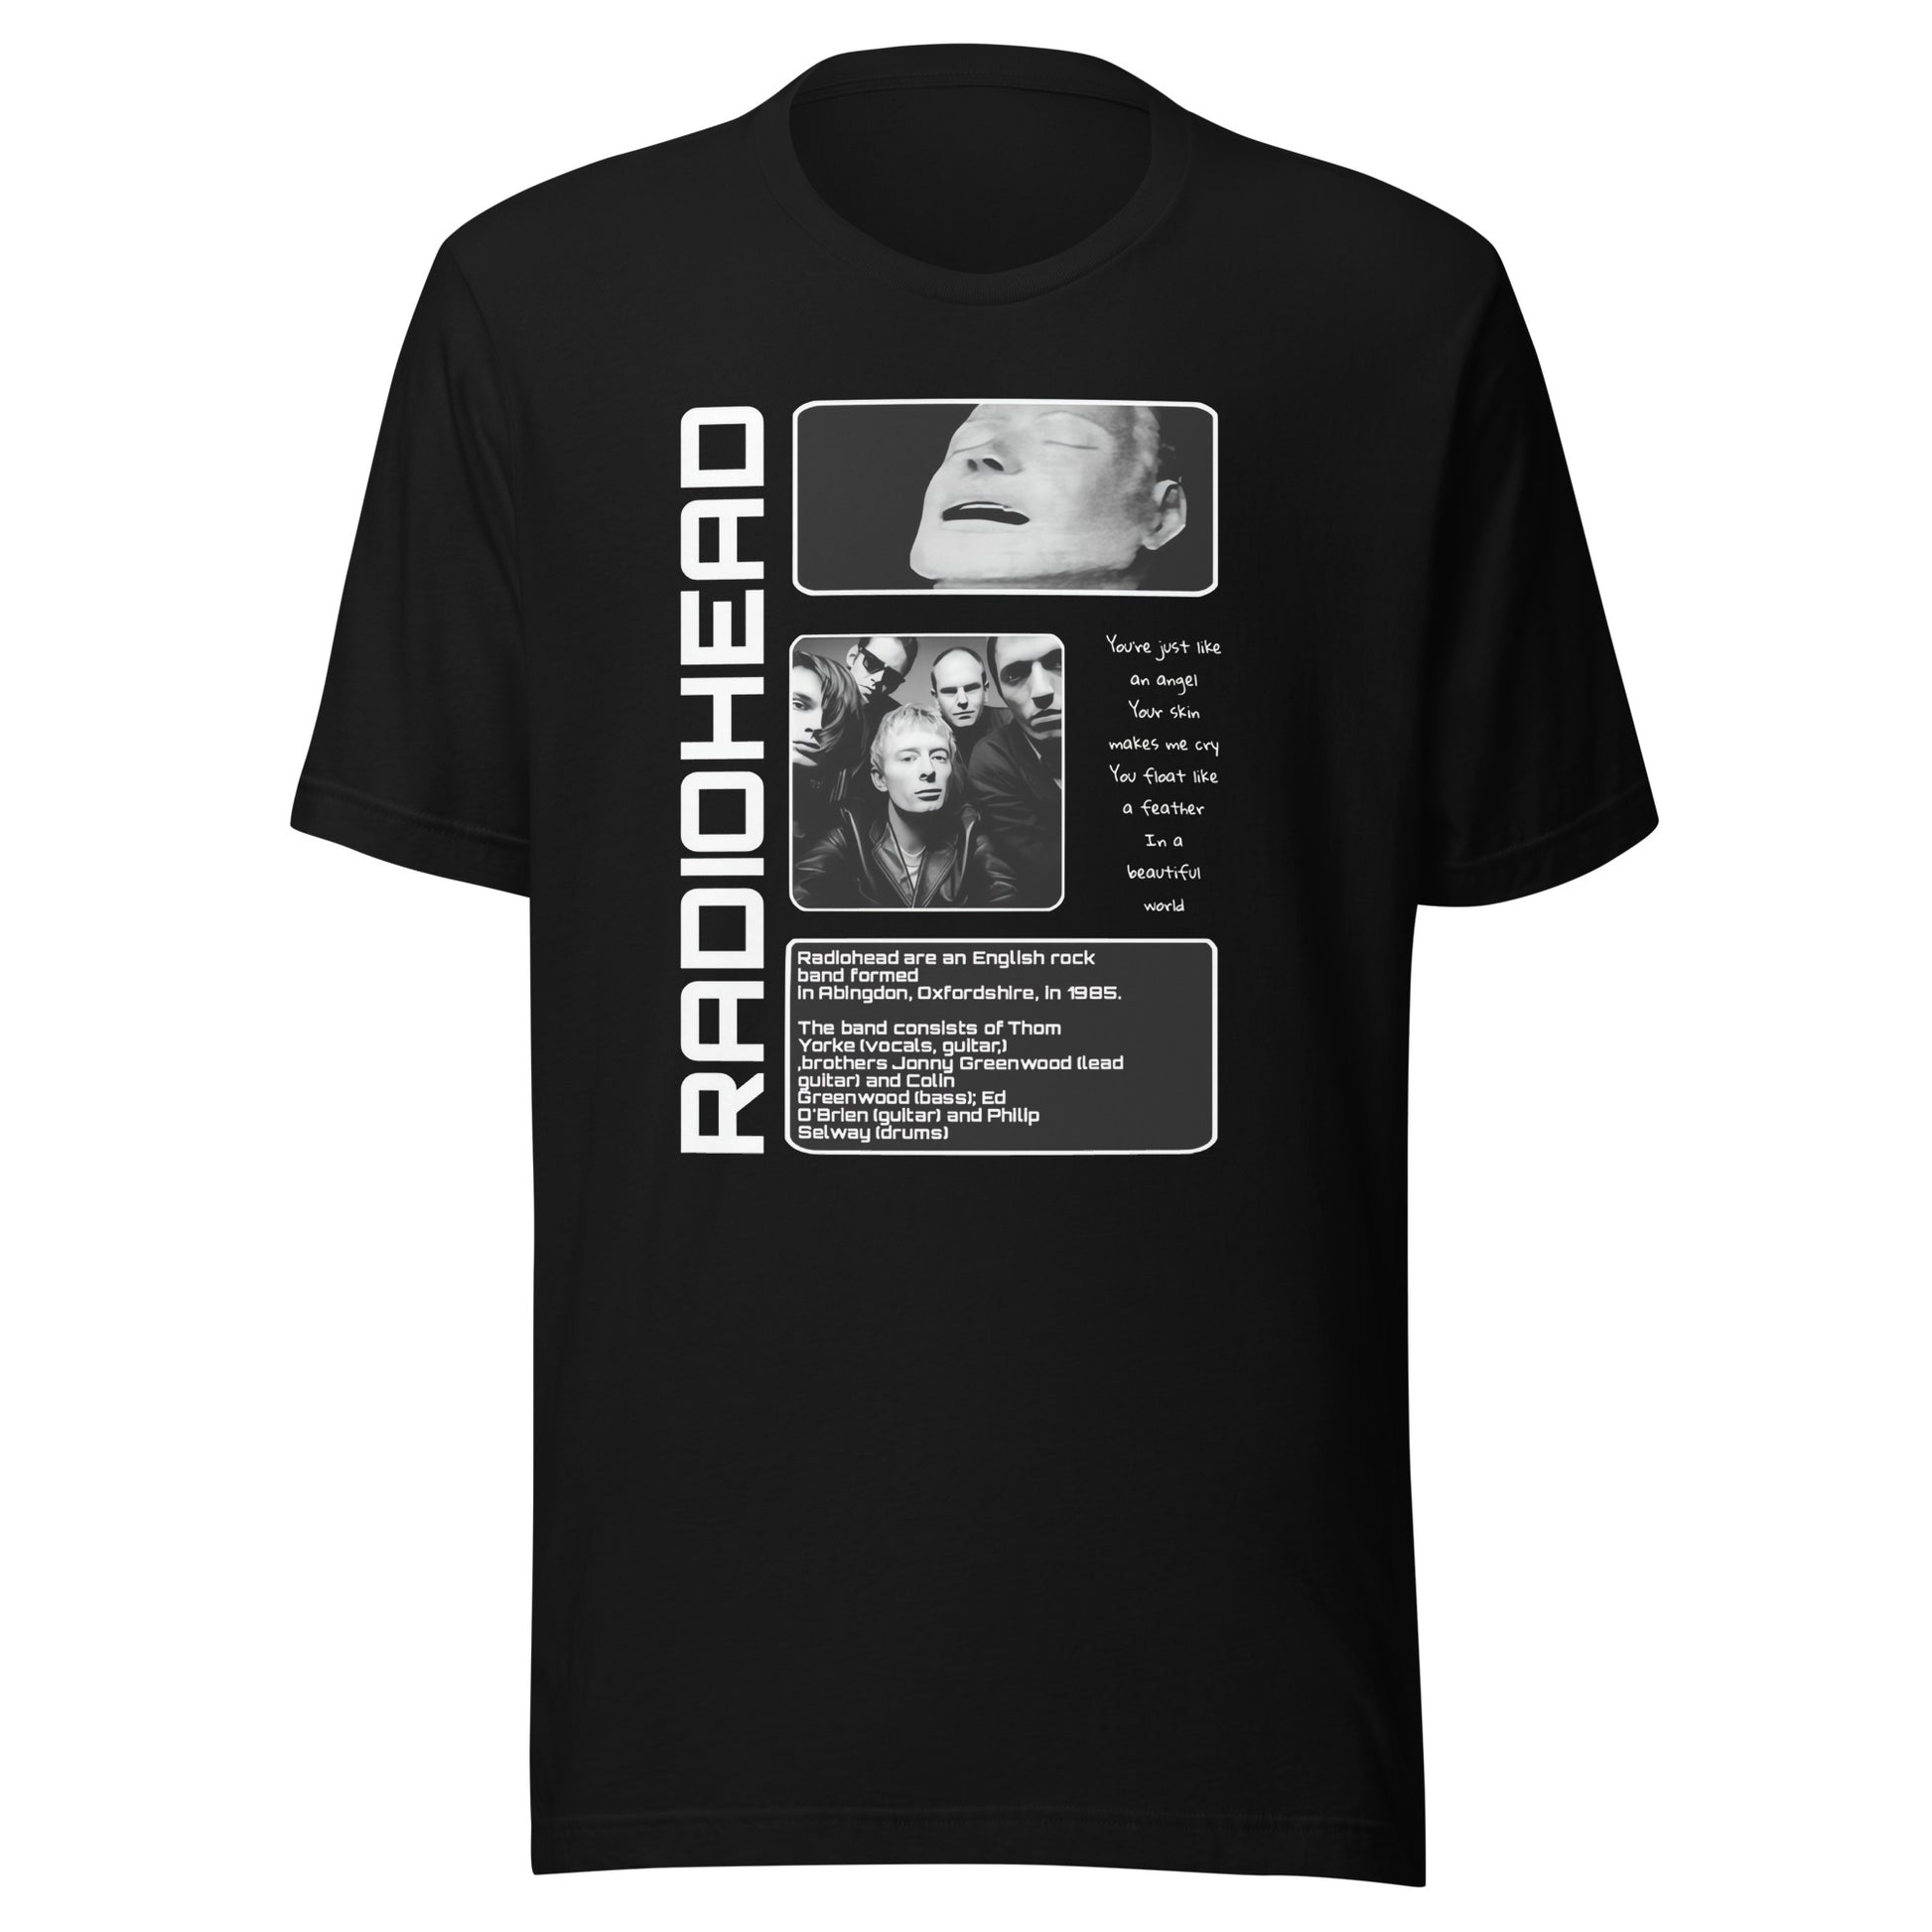 ¡Compra el mejor merchandising en Superstar! Encuentra diseños únicos y de alta calidad en camisetas únicas, Camiseta RadioHead History